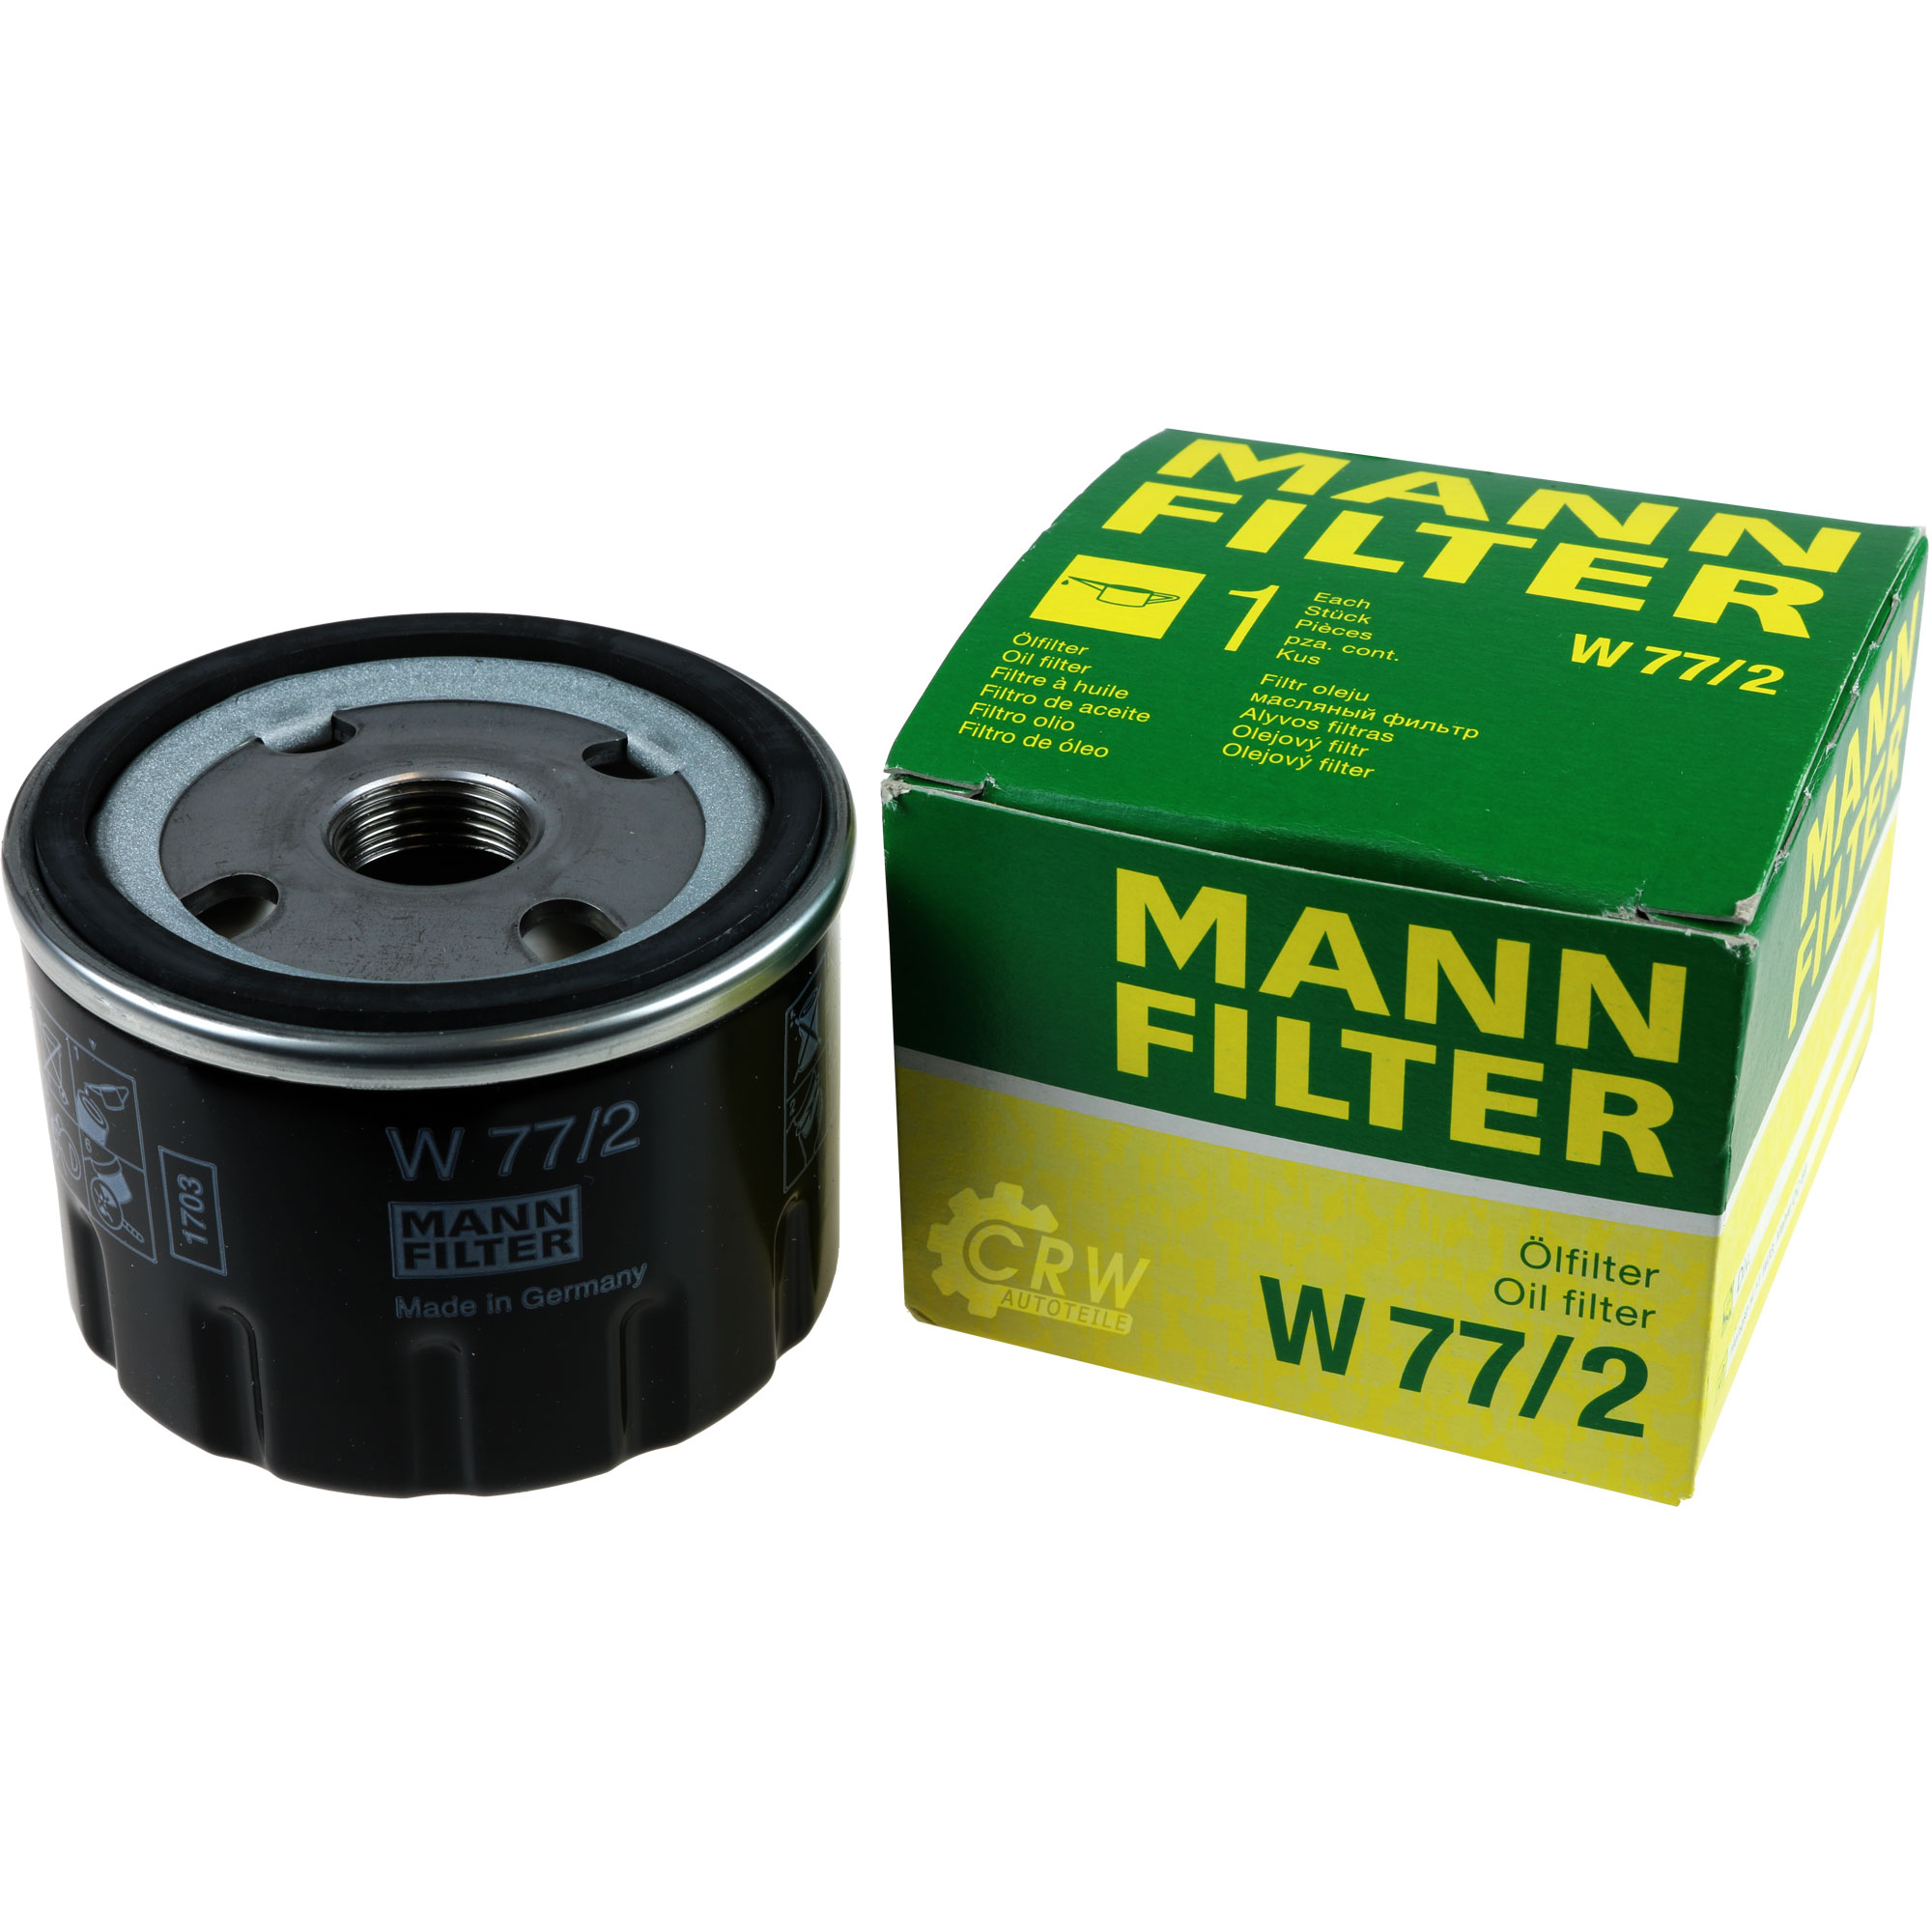 MANN-FILTER Ölfilter W 77/2 Oil Filter